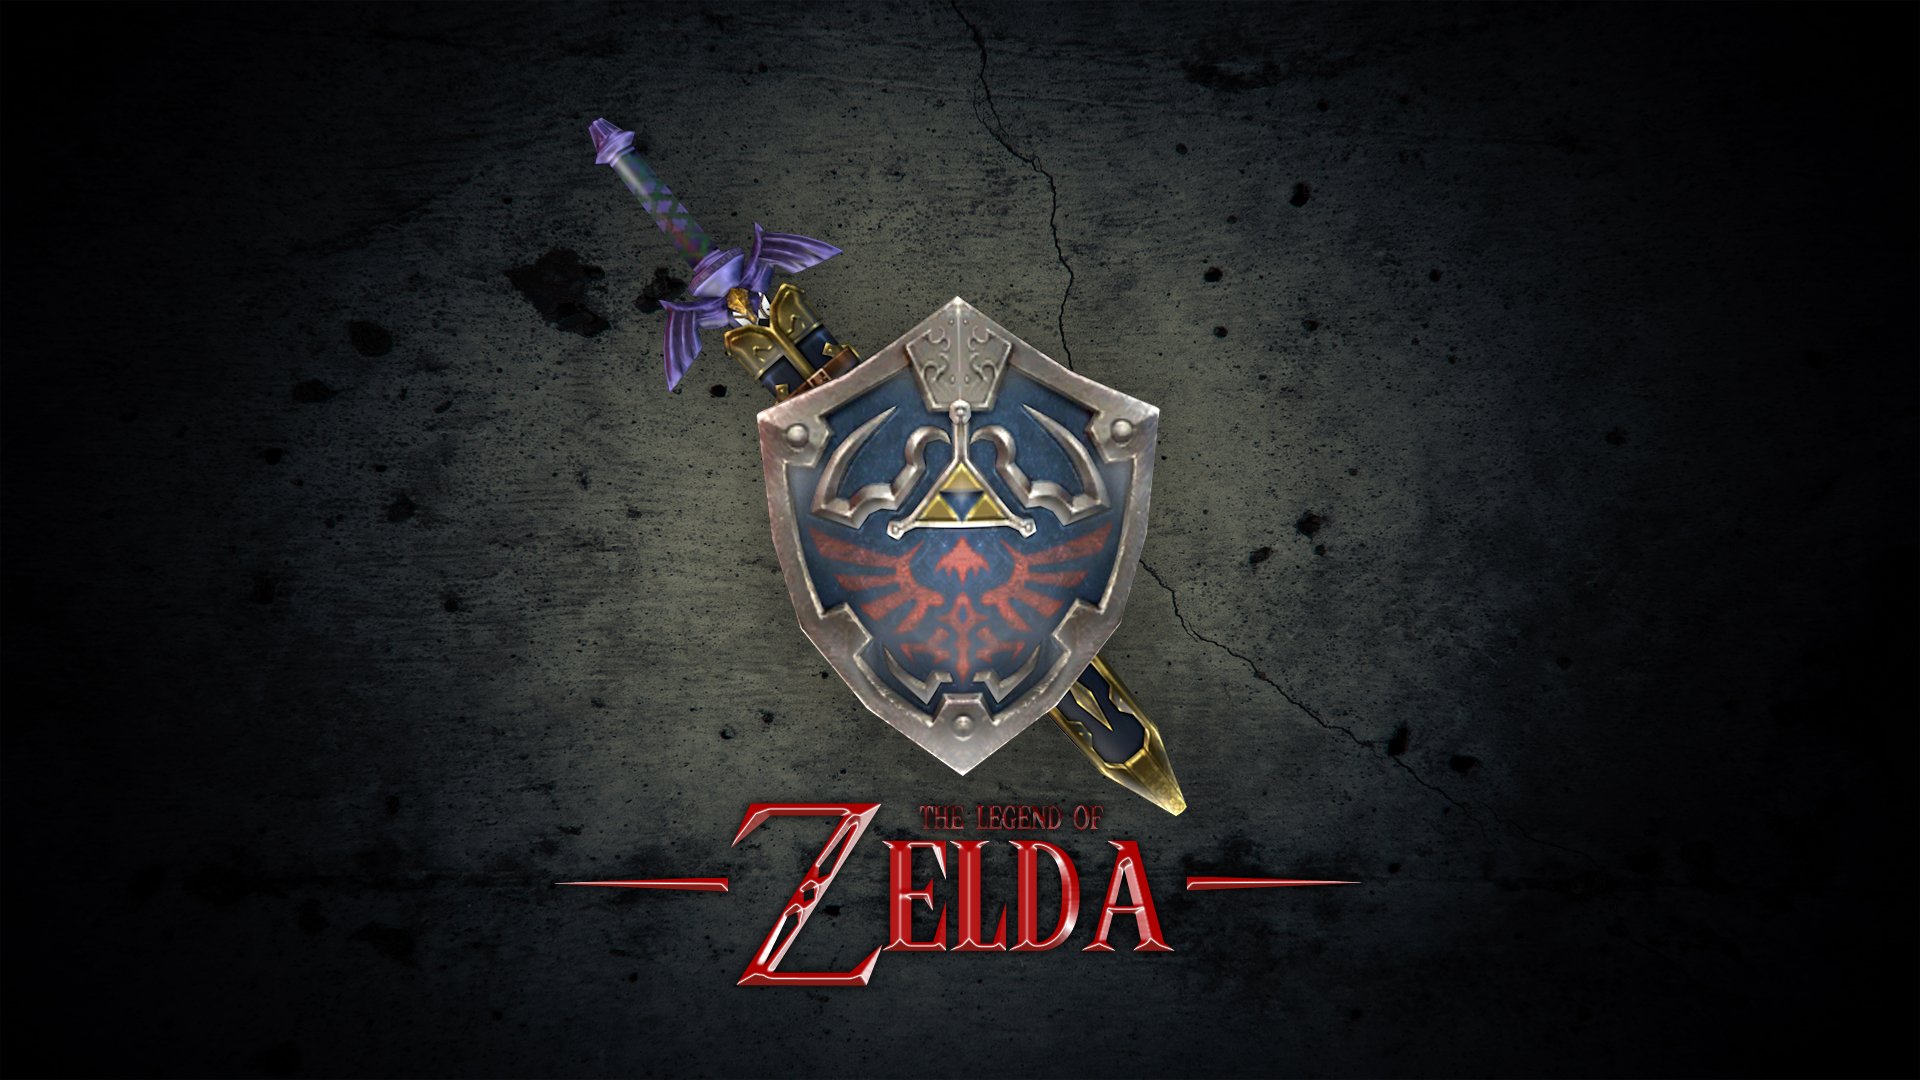  The Legends Of Zelda Swords Logo HD Wallpapers 1080x1920Px XzmUQc13 1920x1080